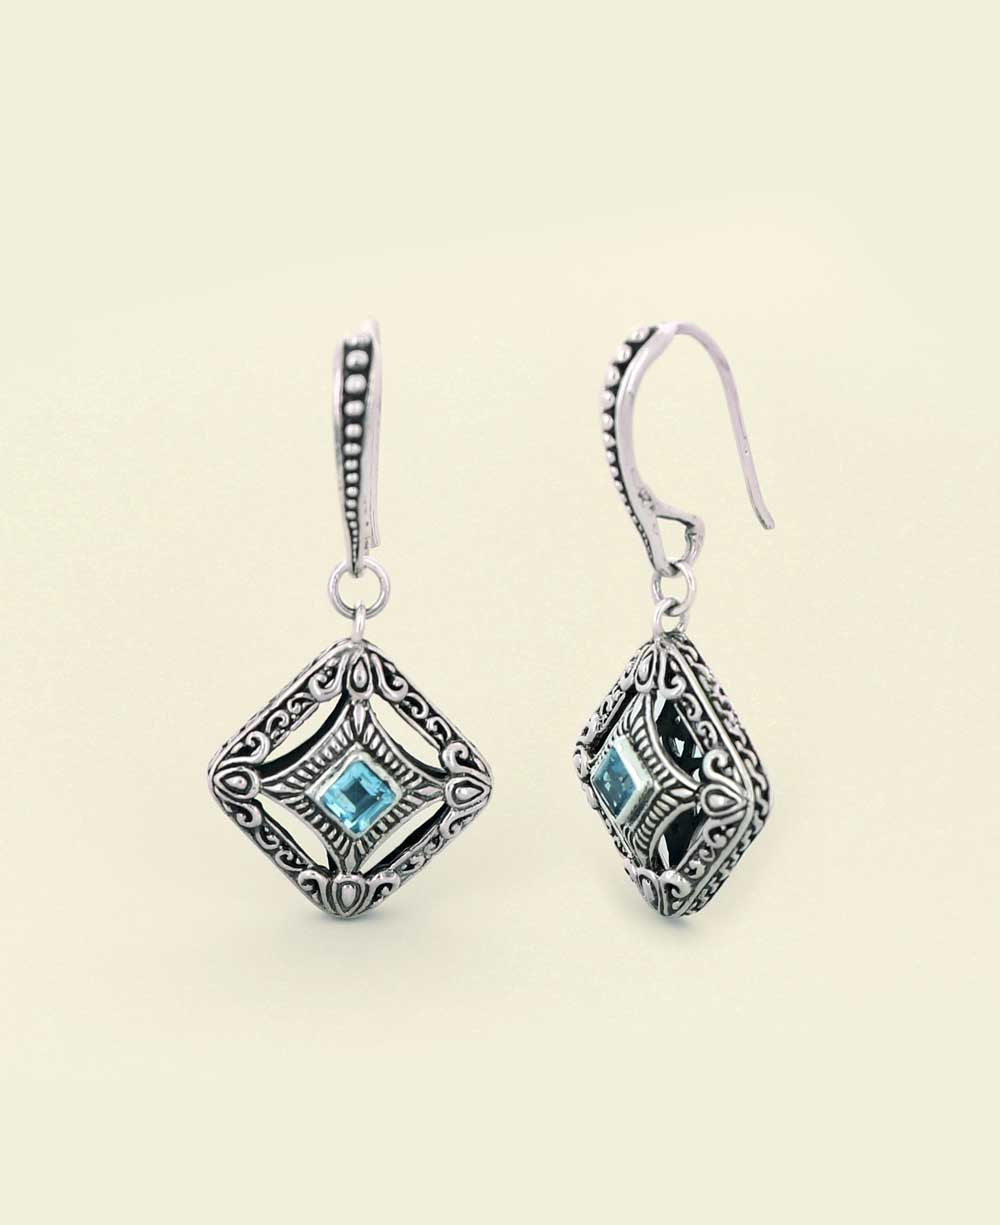 Blue-topaz-earrings-with-filigree-design